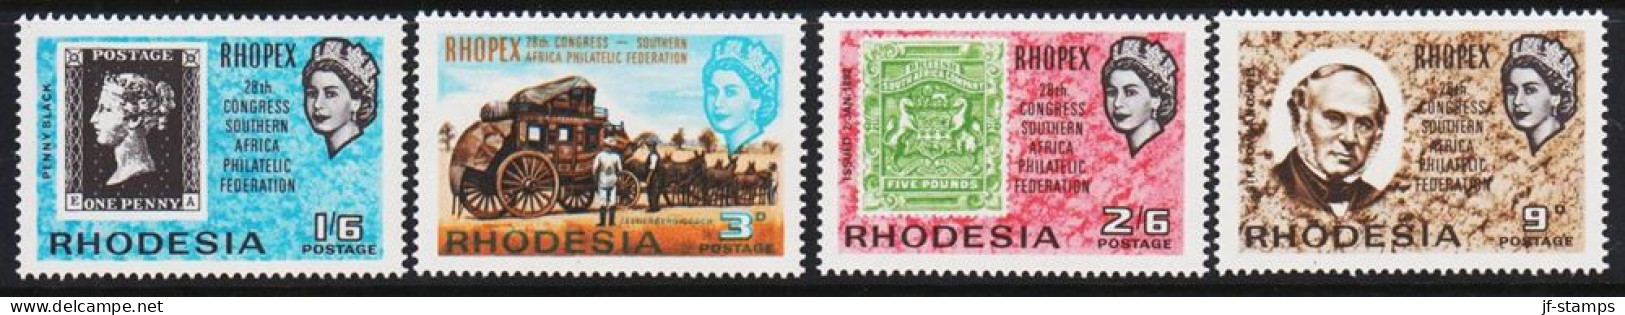 1966. RHODESIA. RHOPEX. Complete Set With 4 Stamps Never Hinged.  (Michel 38-41) - JF545281 - Rhodesien (1964-1980)